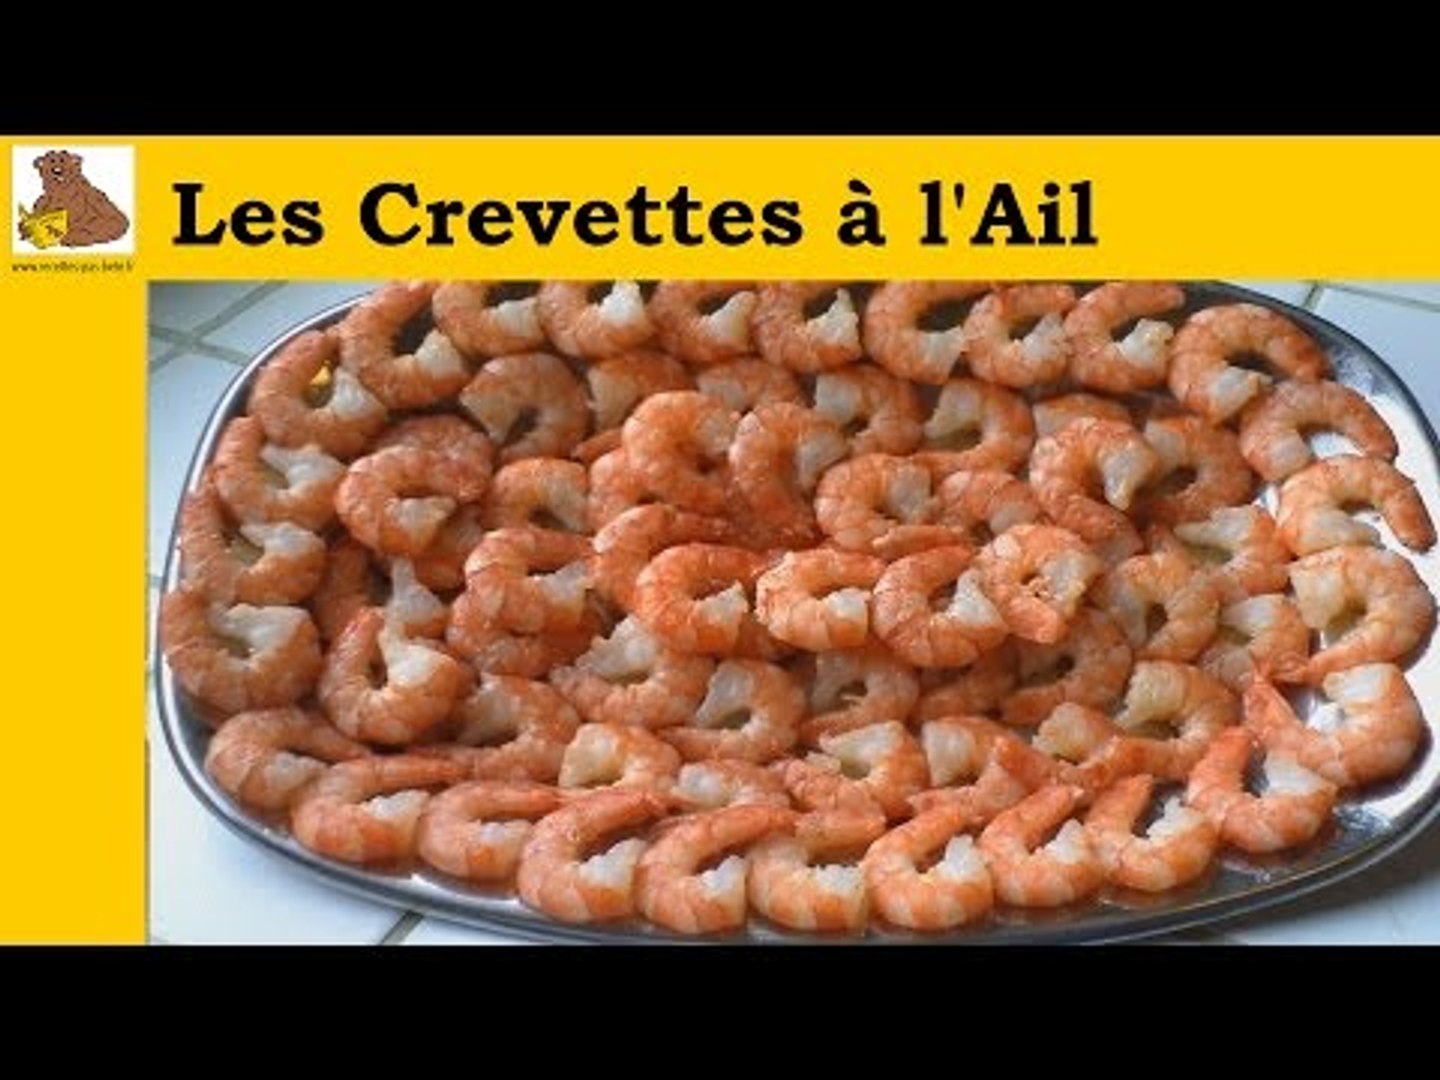 Les crevettes à l'ail (recette rapide et facile) HD - Vidéo Dailymotion